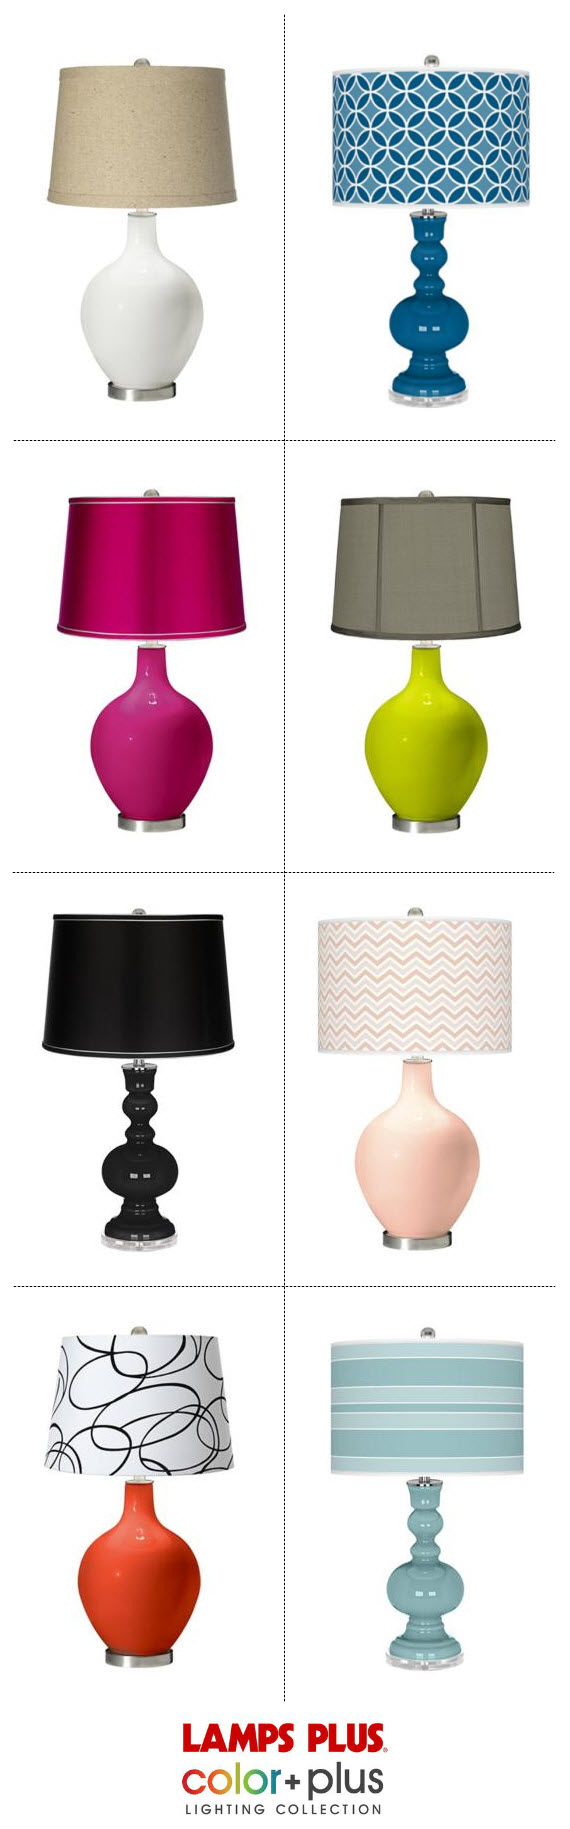 colorful, custom table lamp // designers picks // Lamps Plus